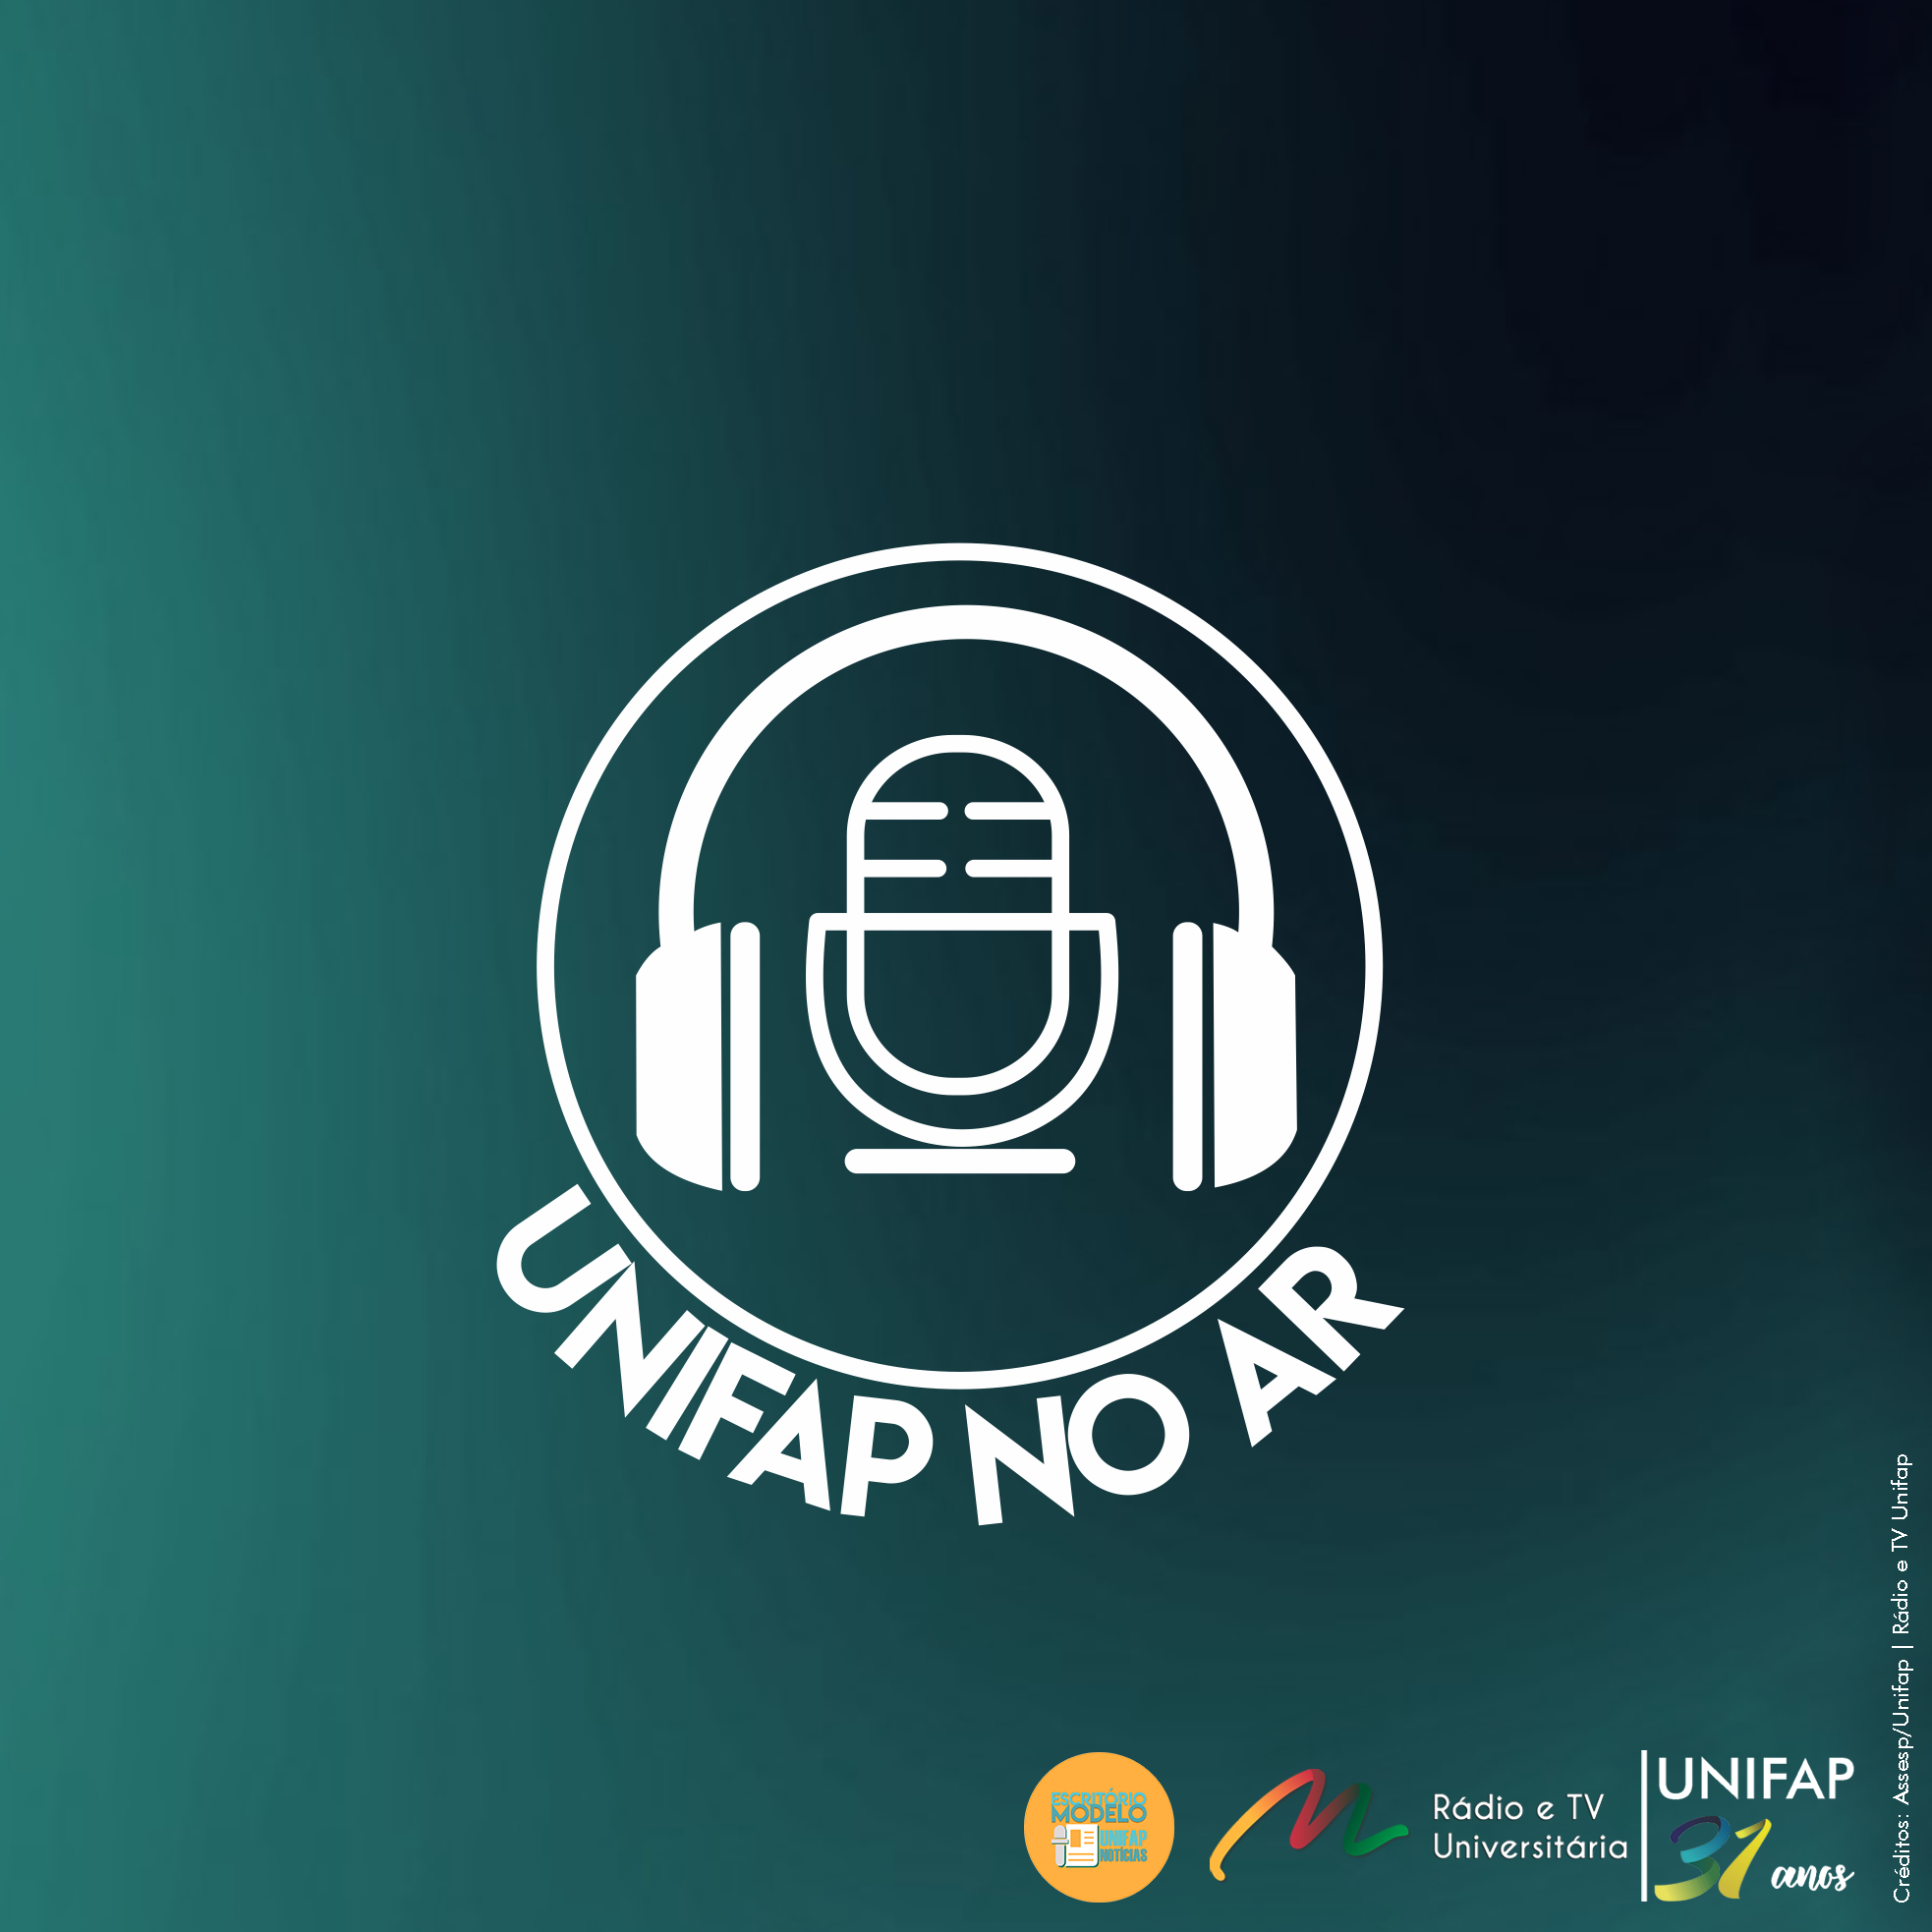 No momento você está vendo Podcast “Unifap no Ar” divulga as principais notícias da Unifap